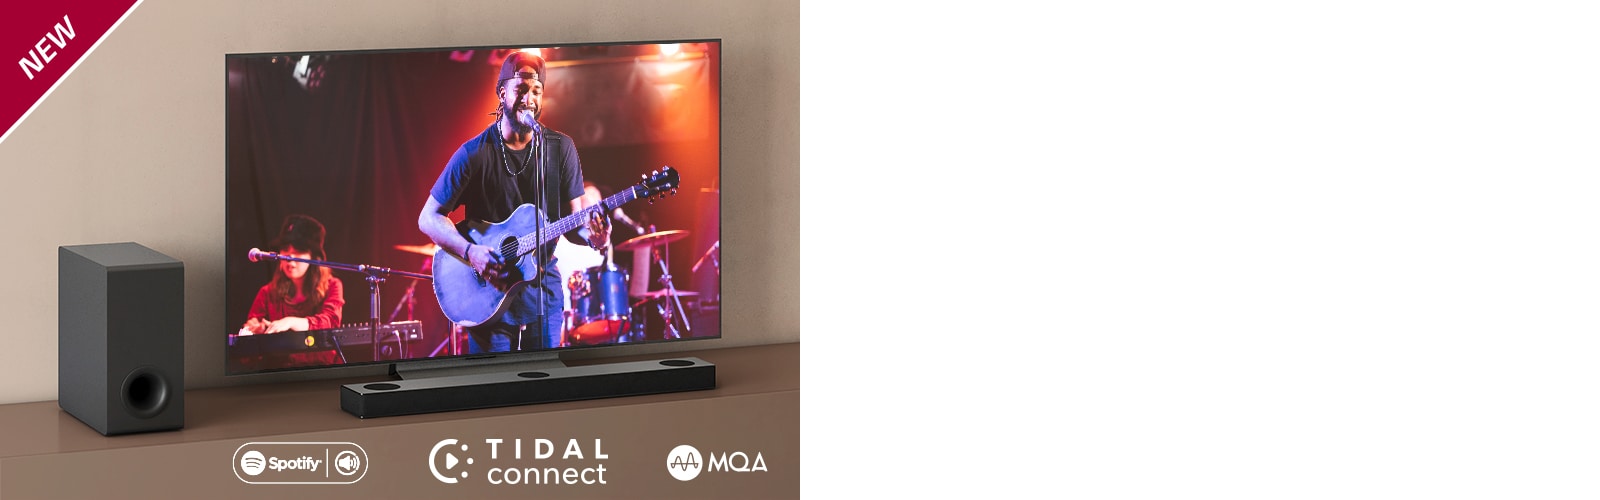 Η τηλεόραση LG είναι τοποθετημένη στο καφέ ράφι, και το LG Sound Bar S80QY βρίσκεται μπροστά από την τηλεόραση. Το υπογούφερ βρίσκεται στην αριστερή πλευρά της τηλεόρασης. Η τηλεόραση δείχνει μια σκηνή από συναυλία. Το σήμα NEW εμφανίζεται στην επάνω αριστερή γωνία.